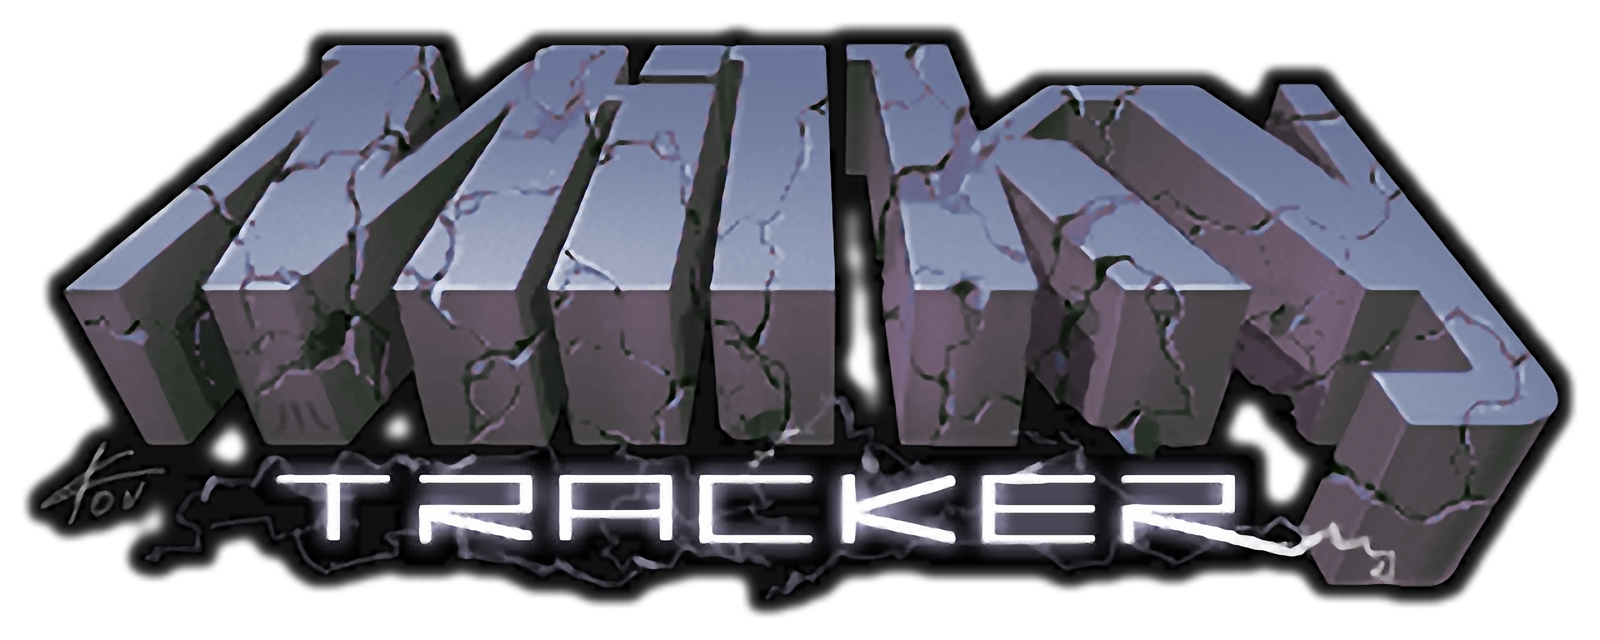 Milkytracker-logo.png